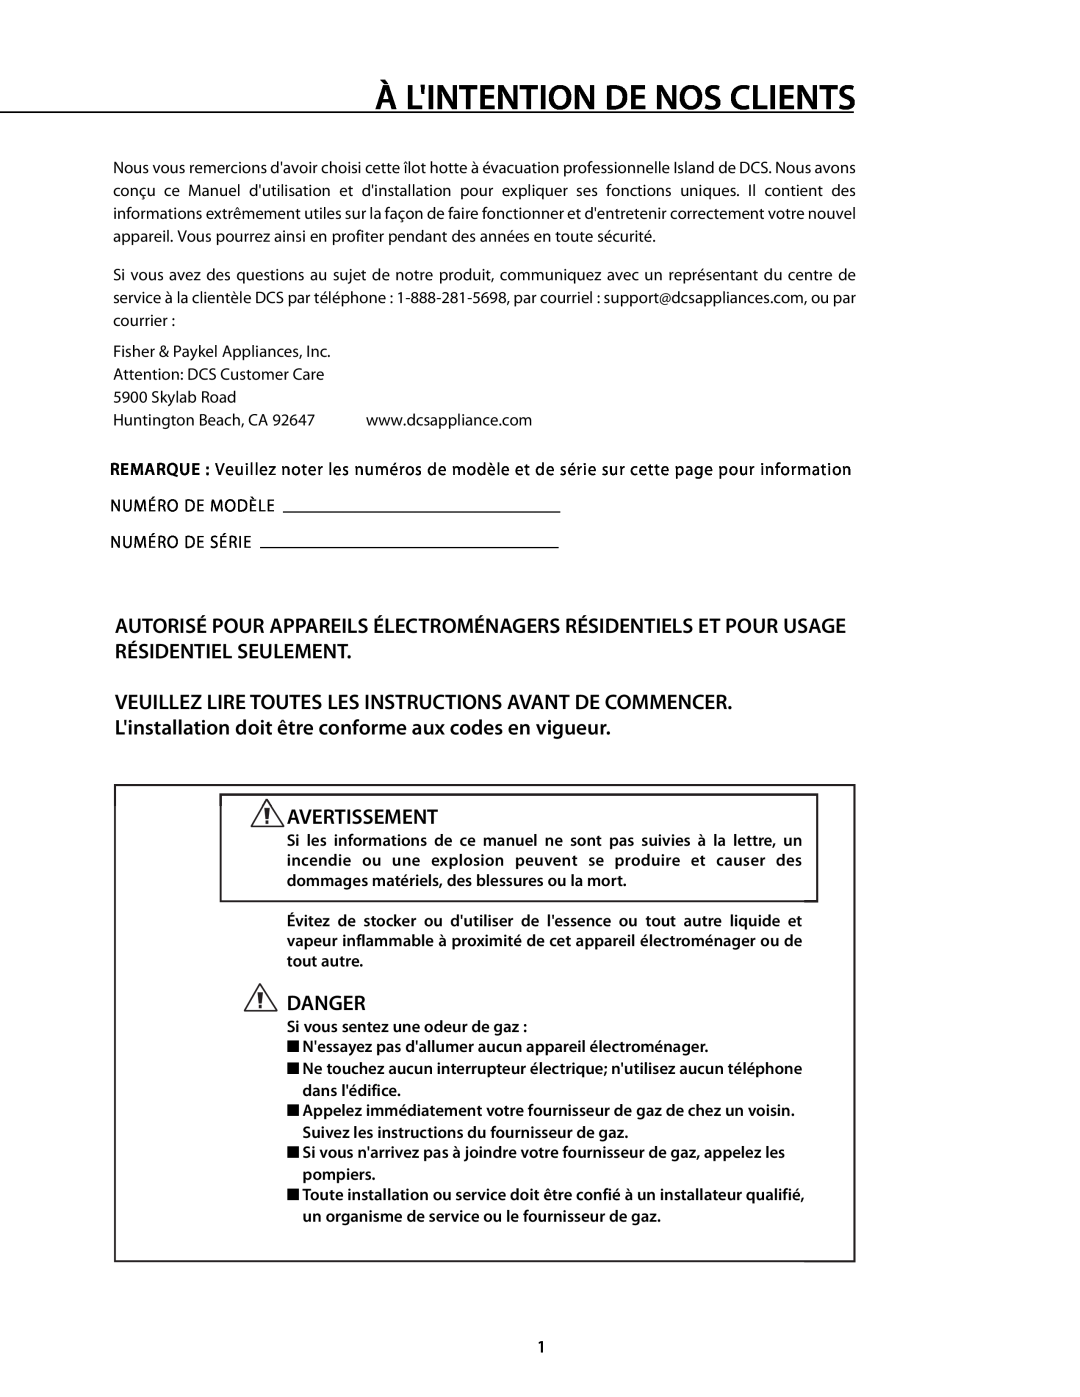 DCS 221712 manual À Lintention De Nos Clients, Avertissement, Danger 